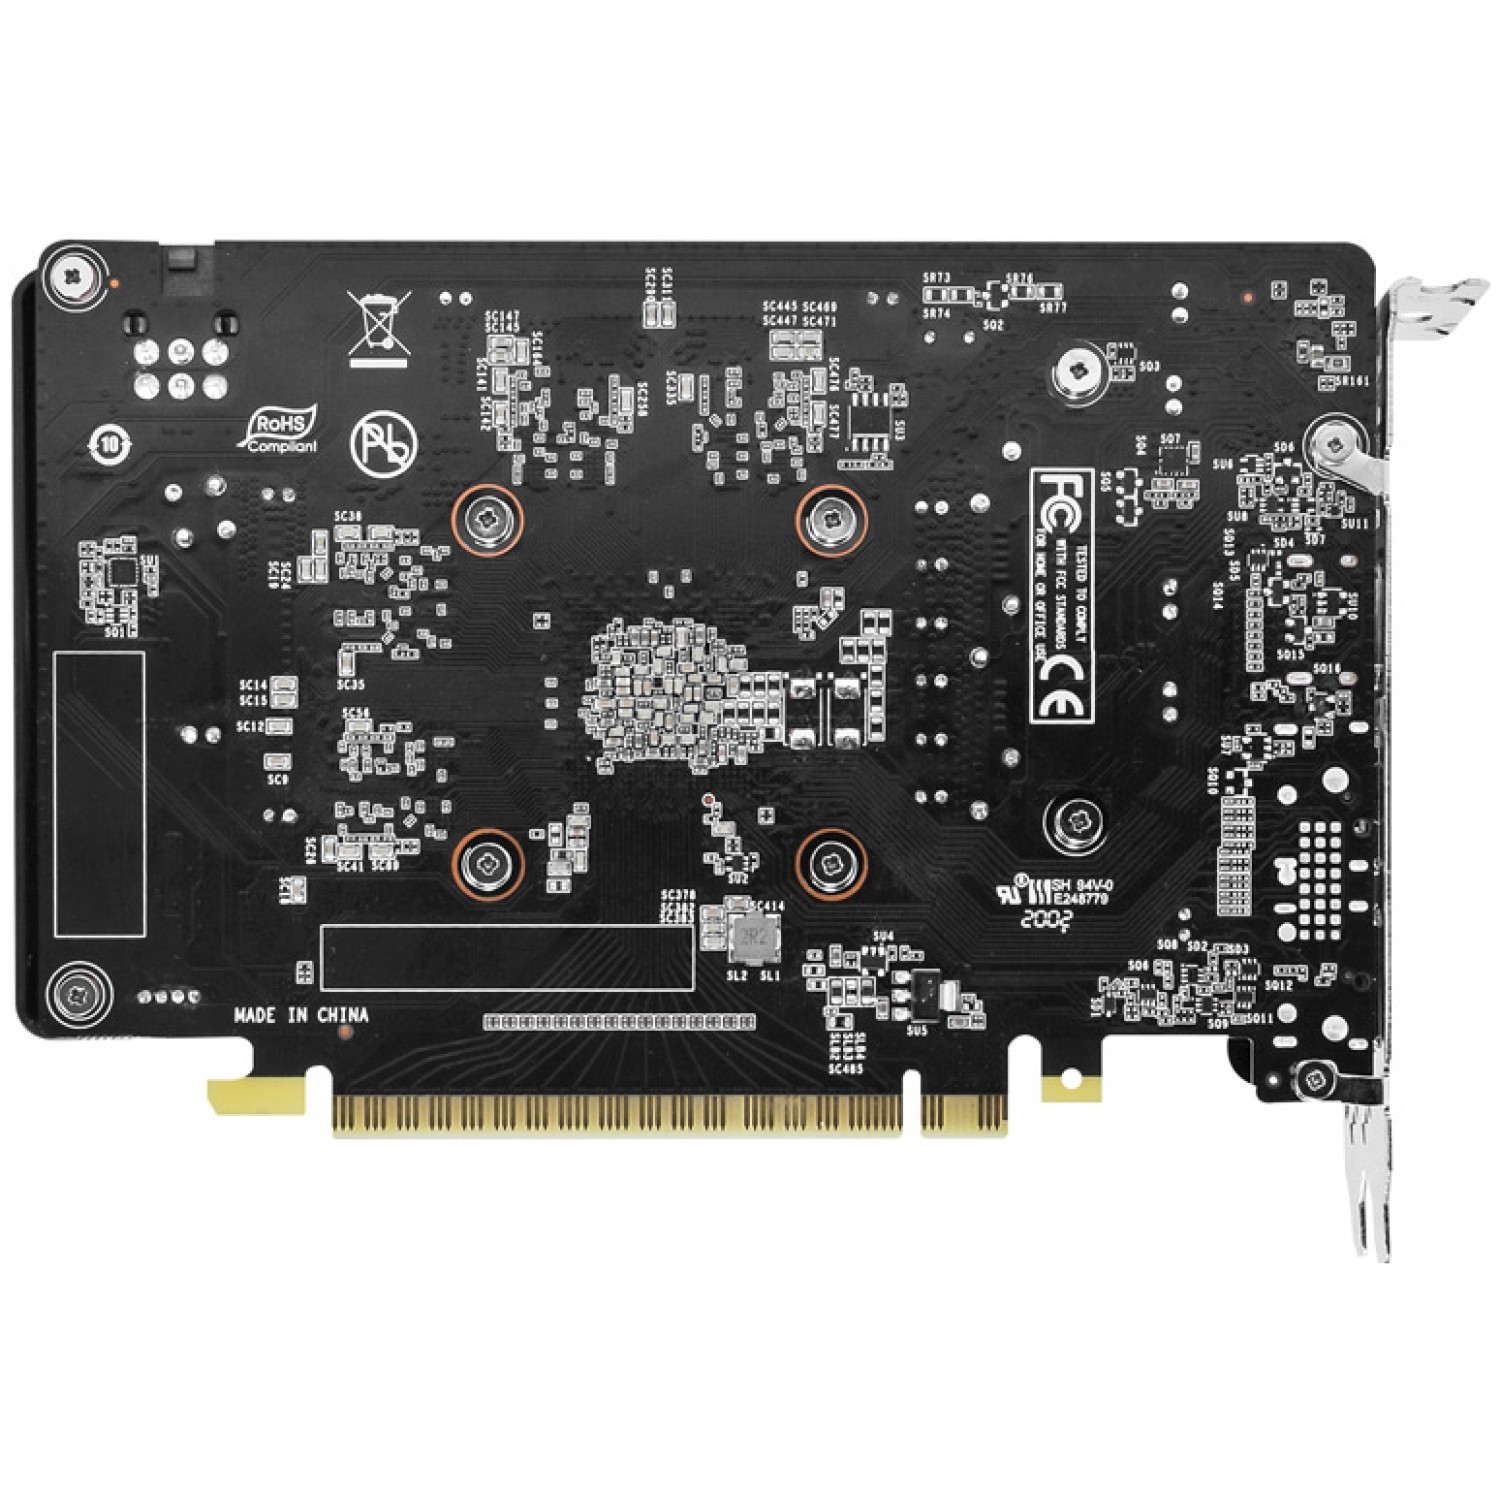 OpenGL 4.6 NVIDIA GPU Boost HDCP 2.2 Dual-Fan dizajn Mini-ITX form factor podpora Turing Encoder  - Balix gaming trgovina za videoigre in računalniško opremo